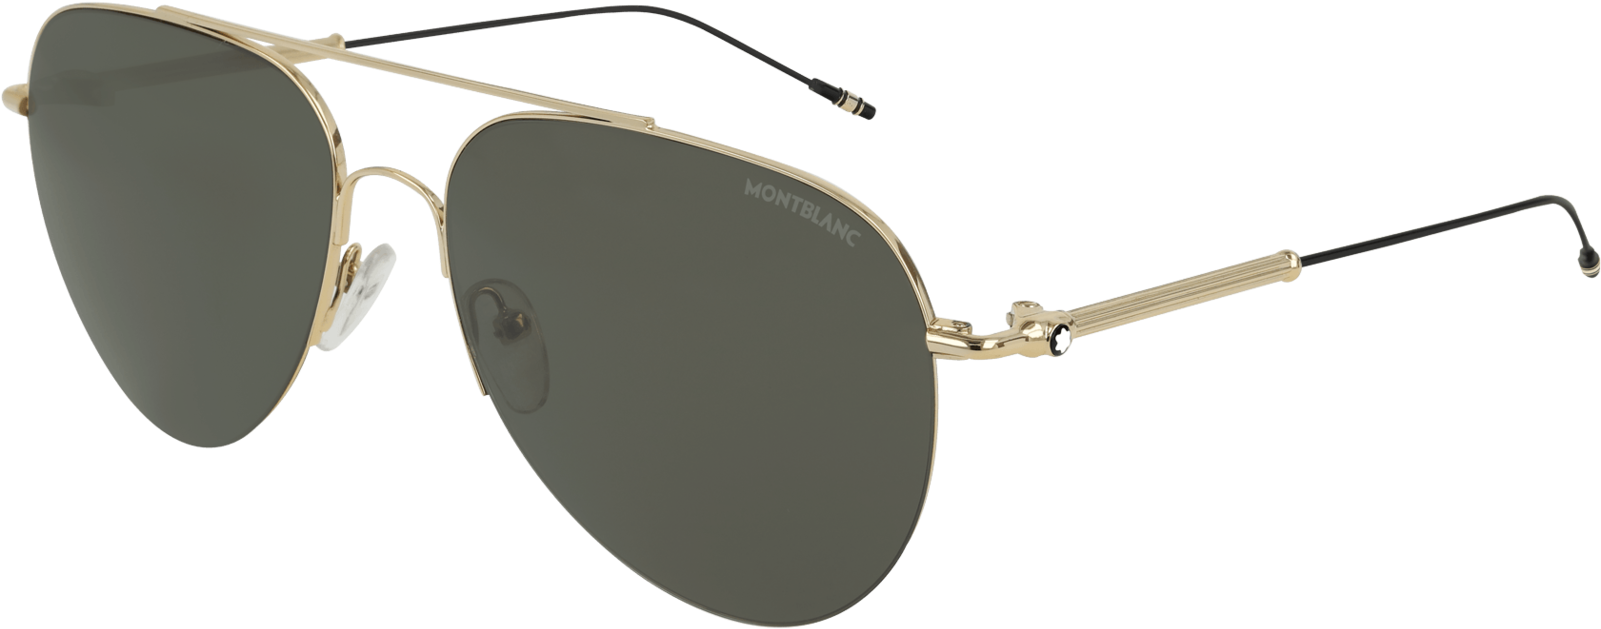 255147 Ecom Retina 01 - Sunglasses (1600x1600), Png Download